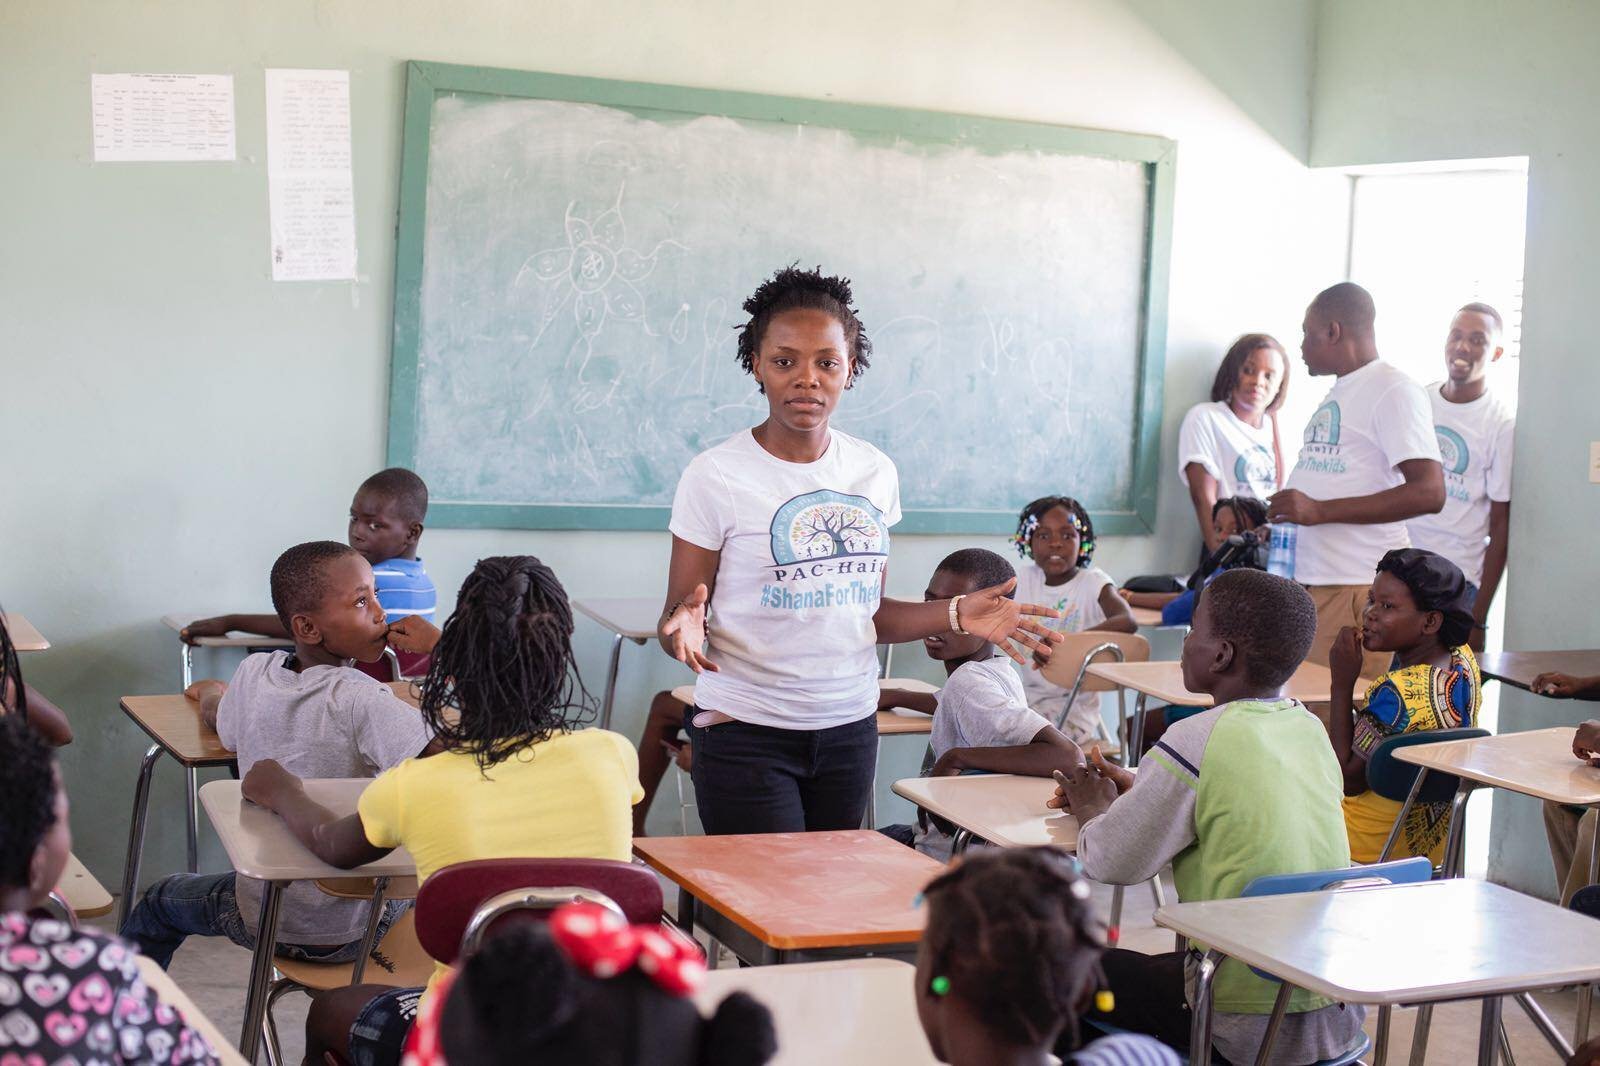 pac-haiti school1.jpg